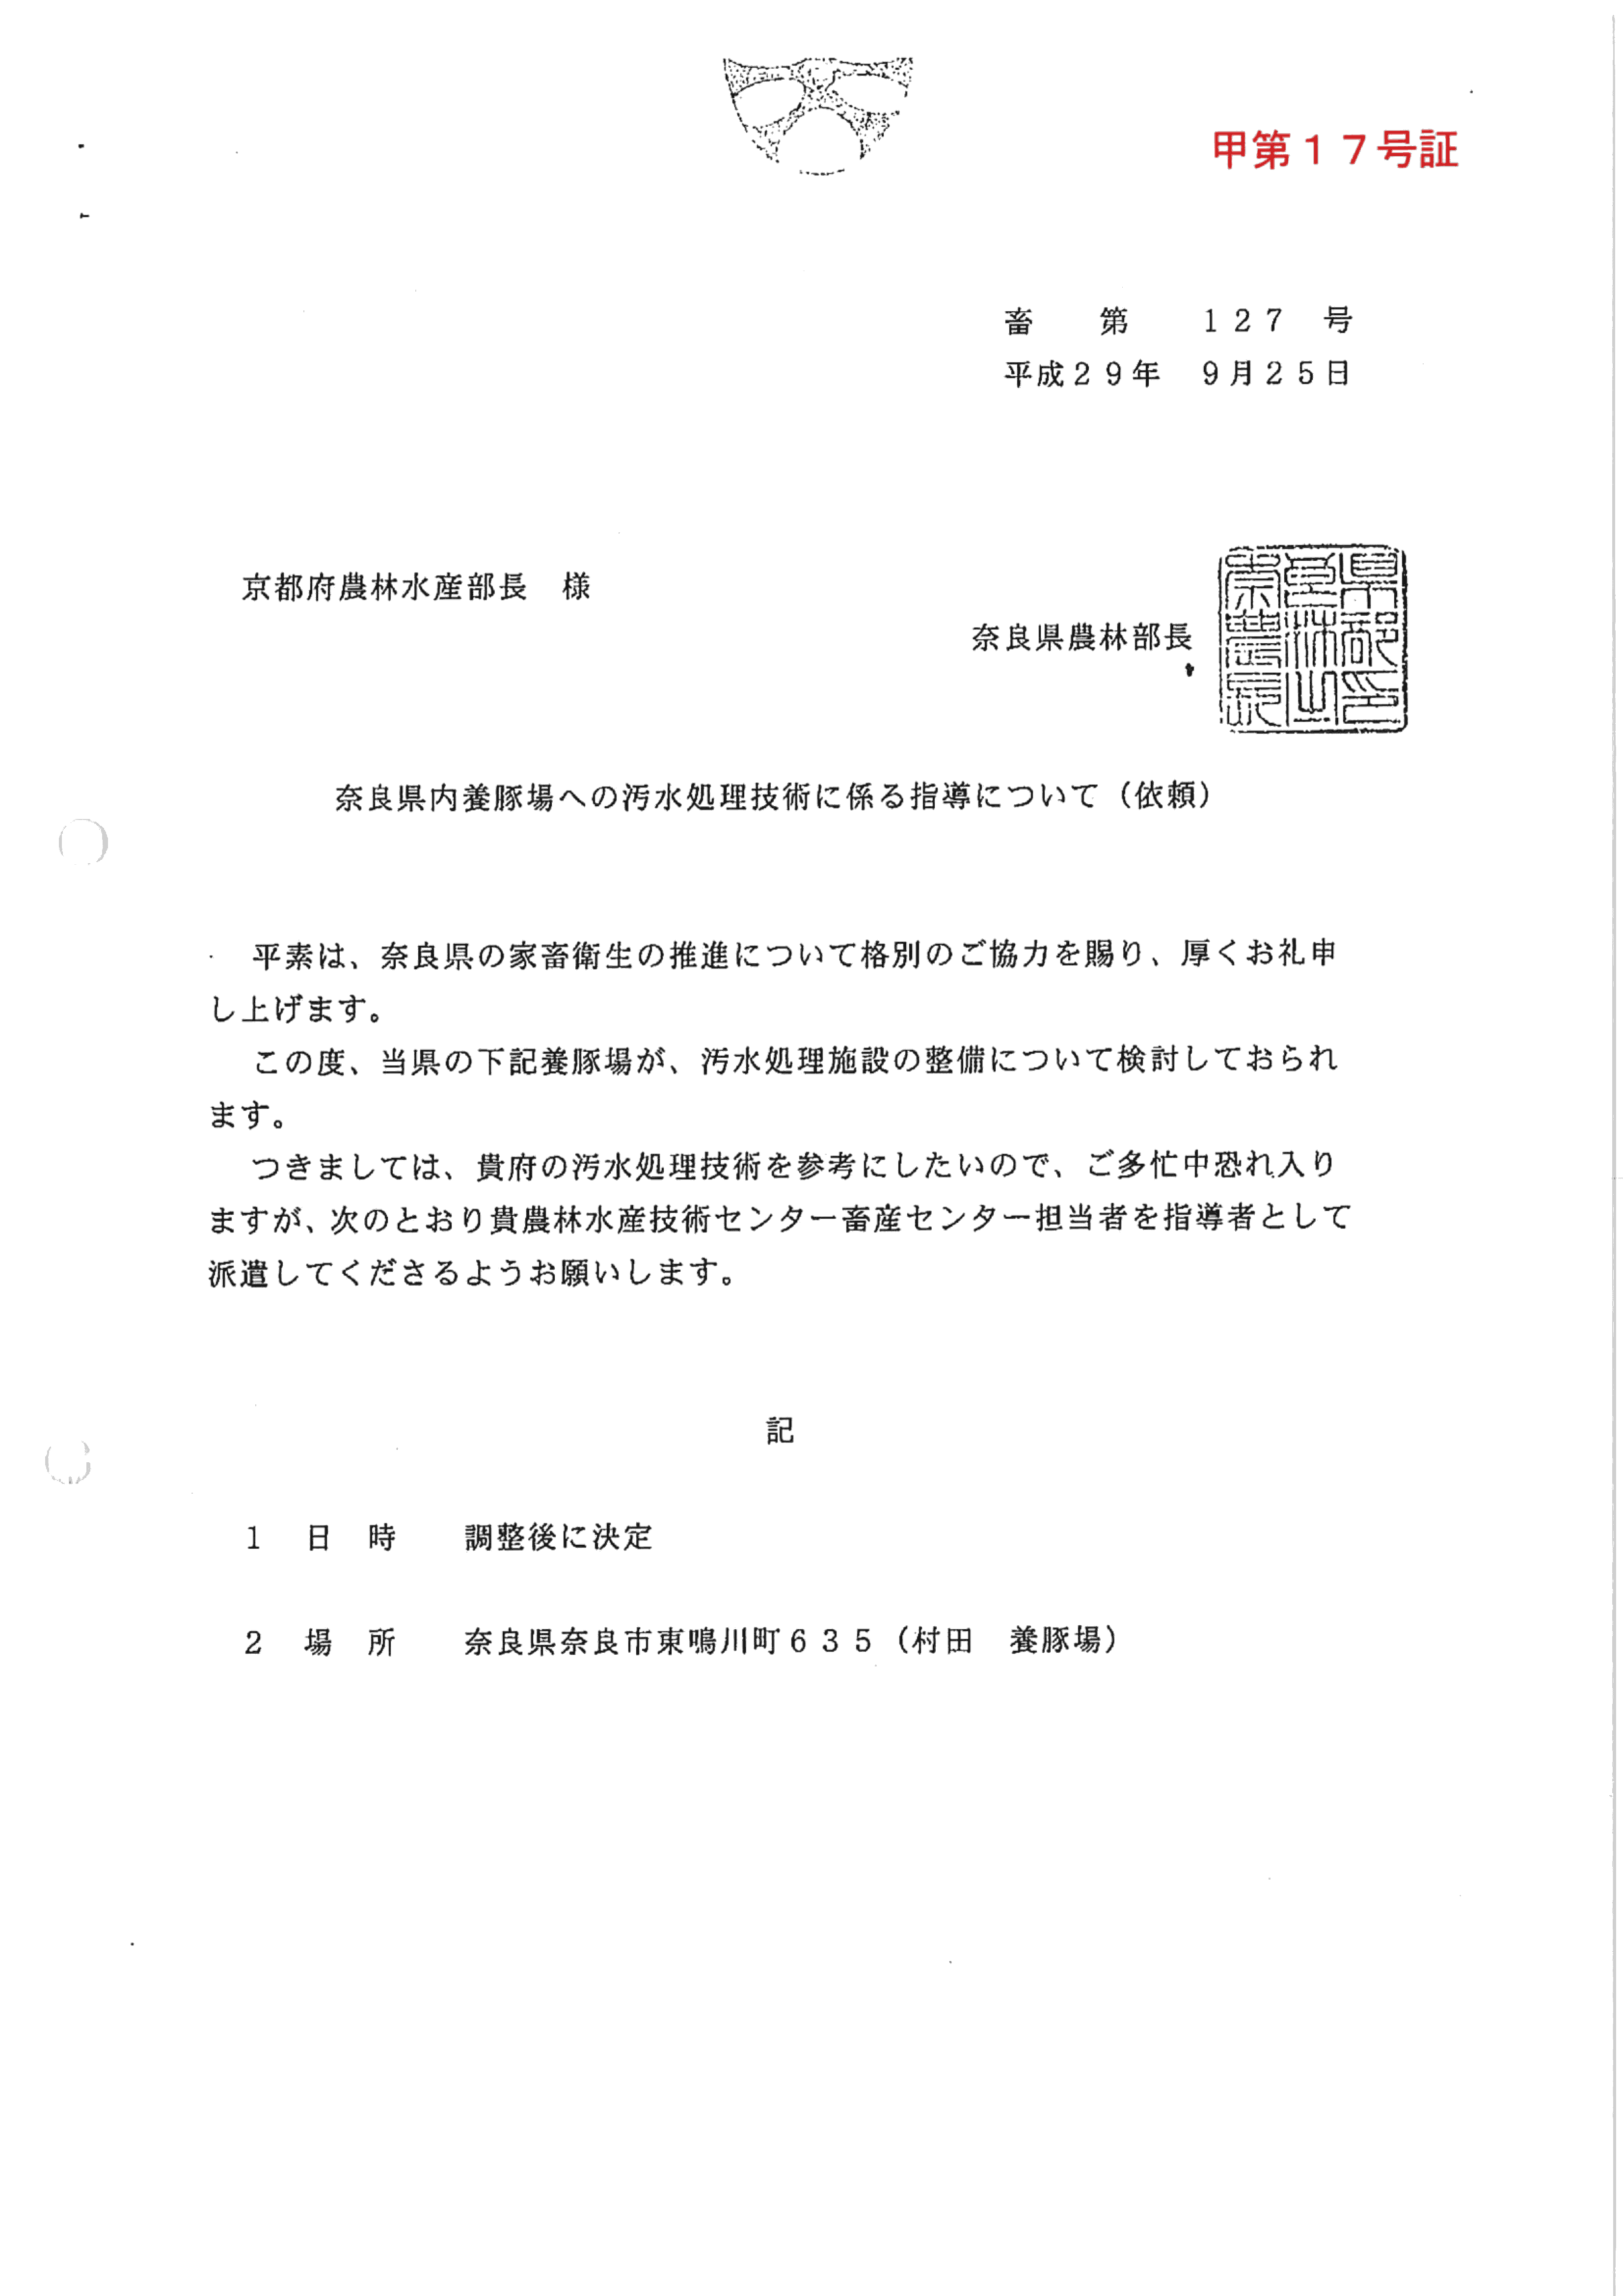 甲17-奈良県内養豚場への汚水処理技術に係る指導について